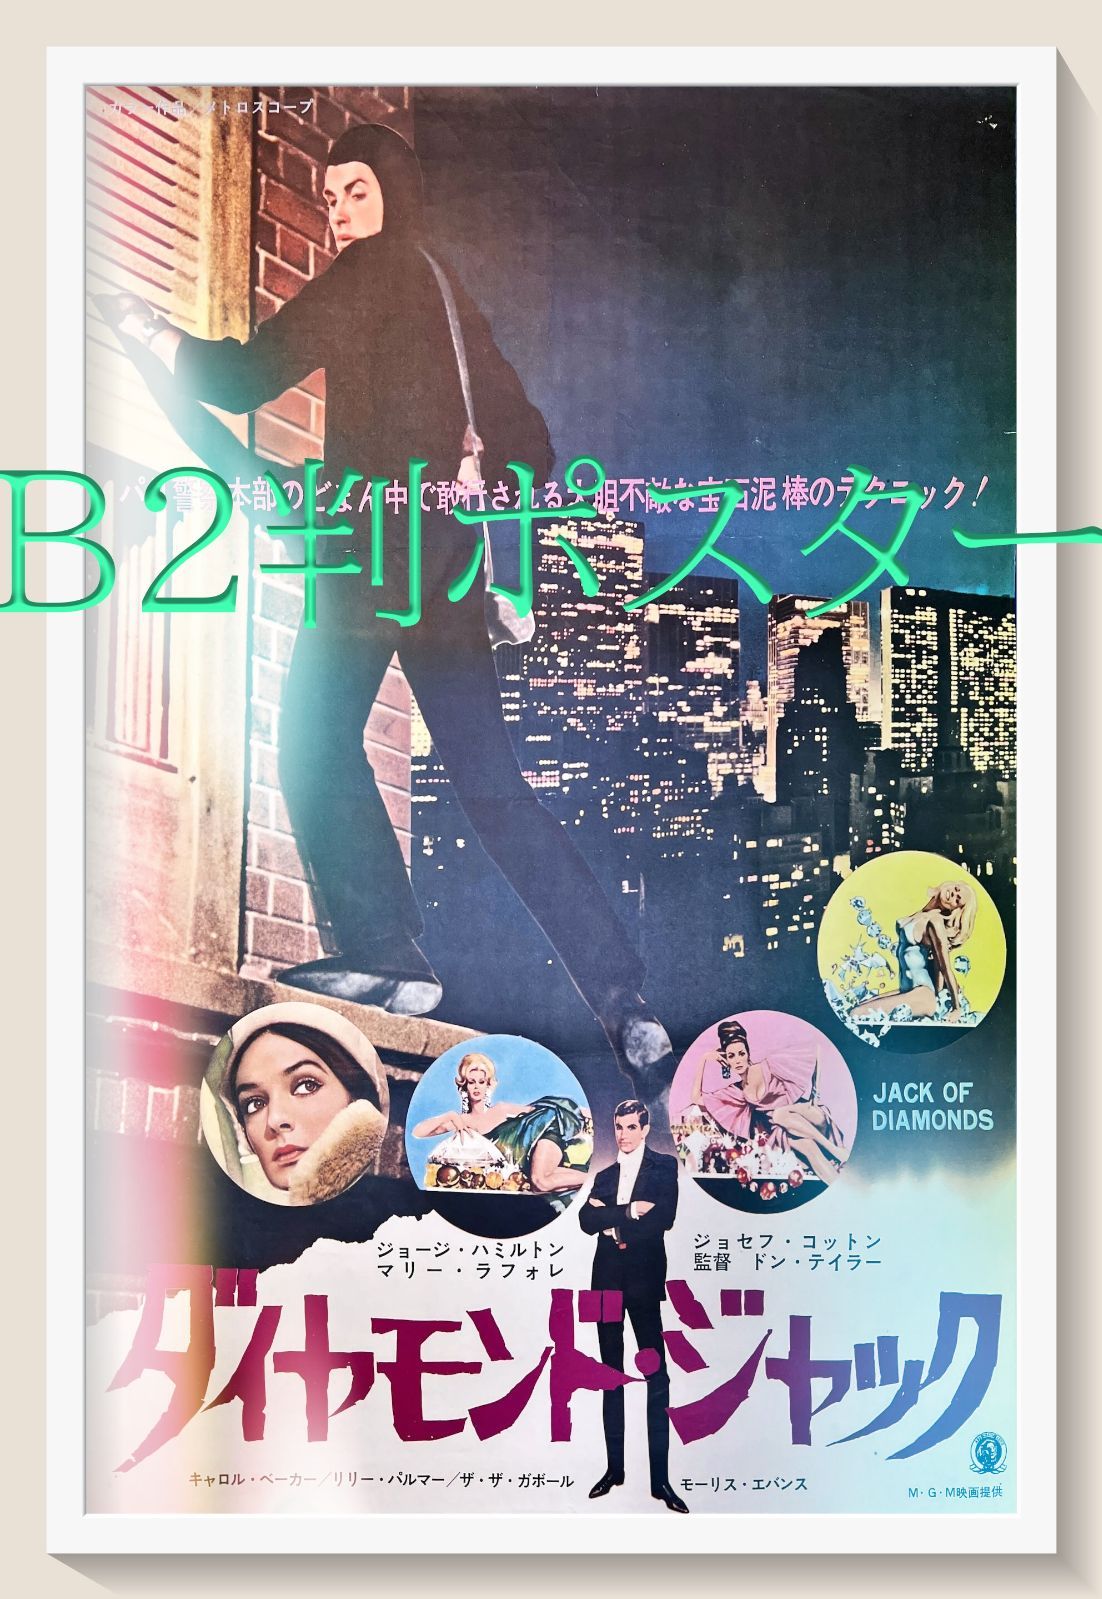 ダイヤモンド・ジャック』映画B2判オリジナルポスター - メルカリ